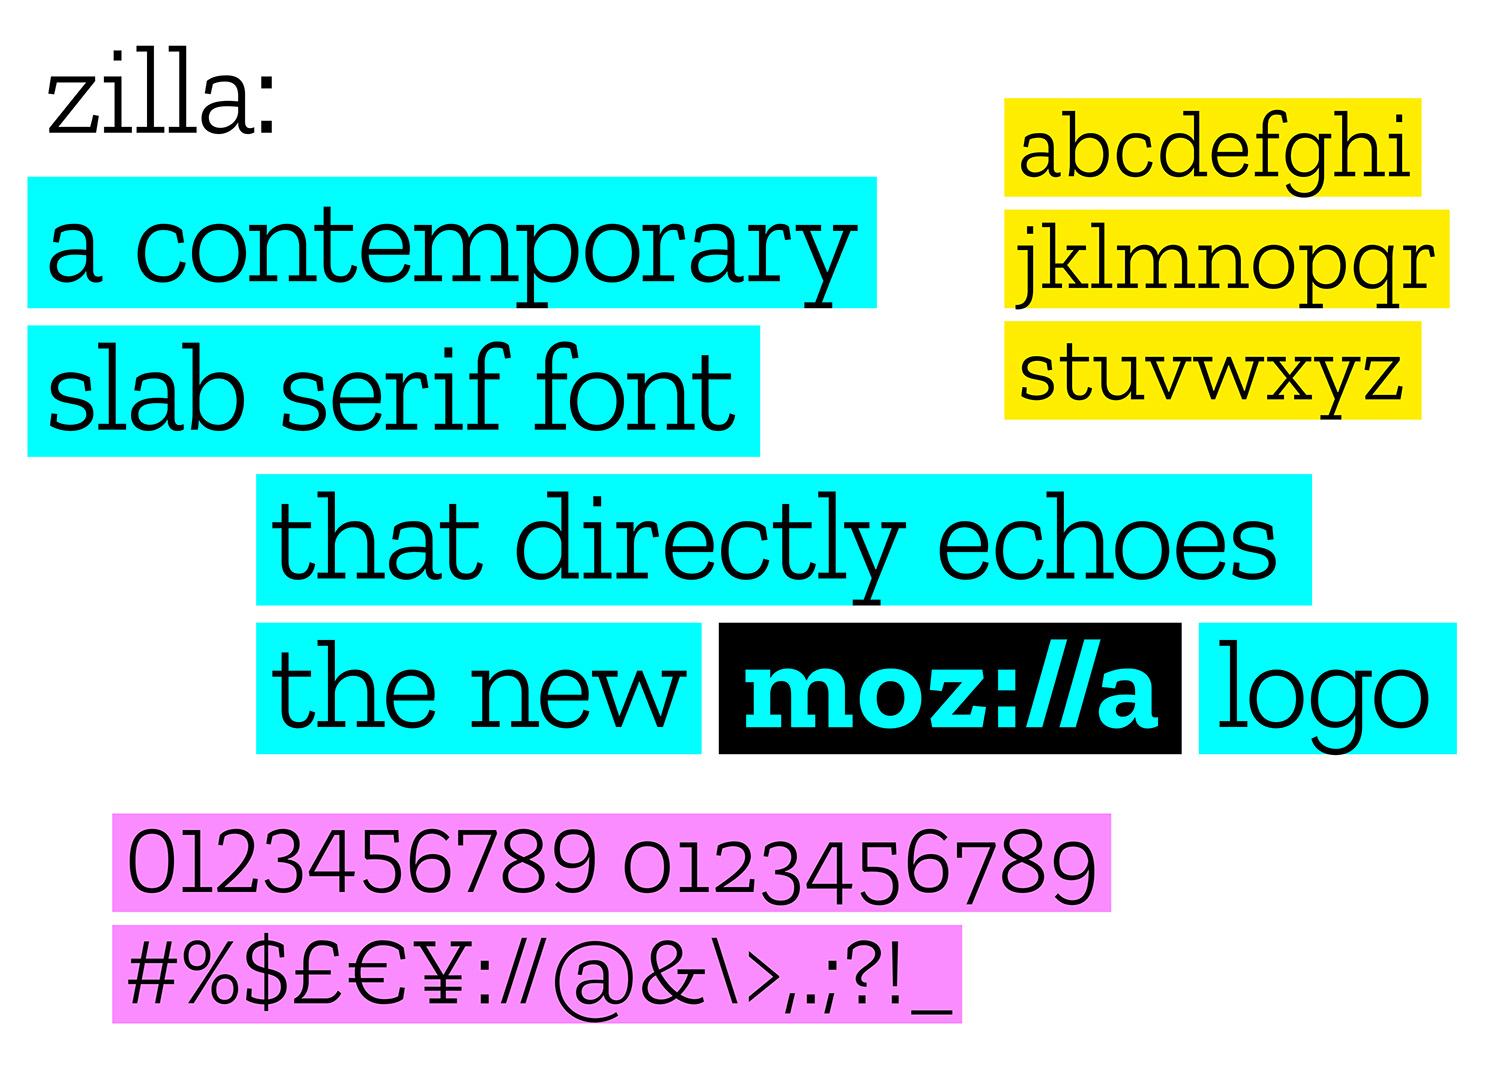 johnsonbanks Mozilla zilla type 2